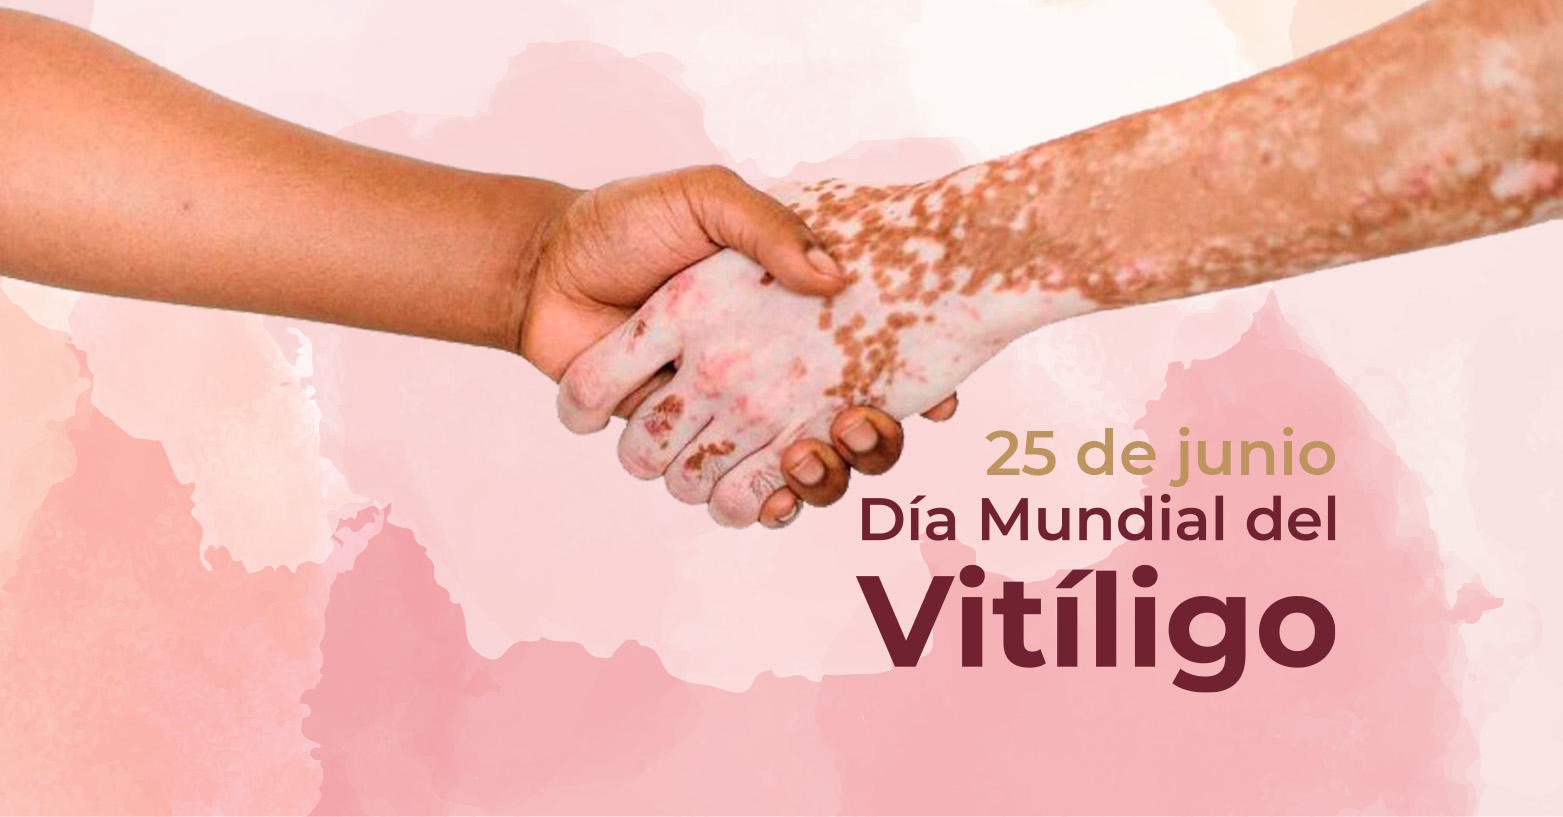 Día Mundial del Vitíligo | 25 de junio